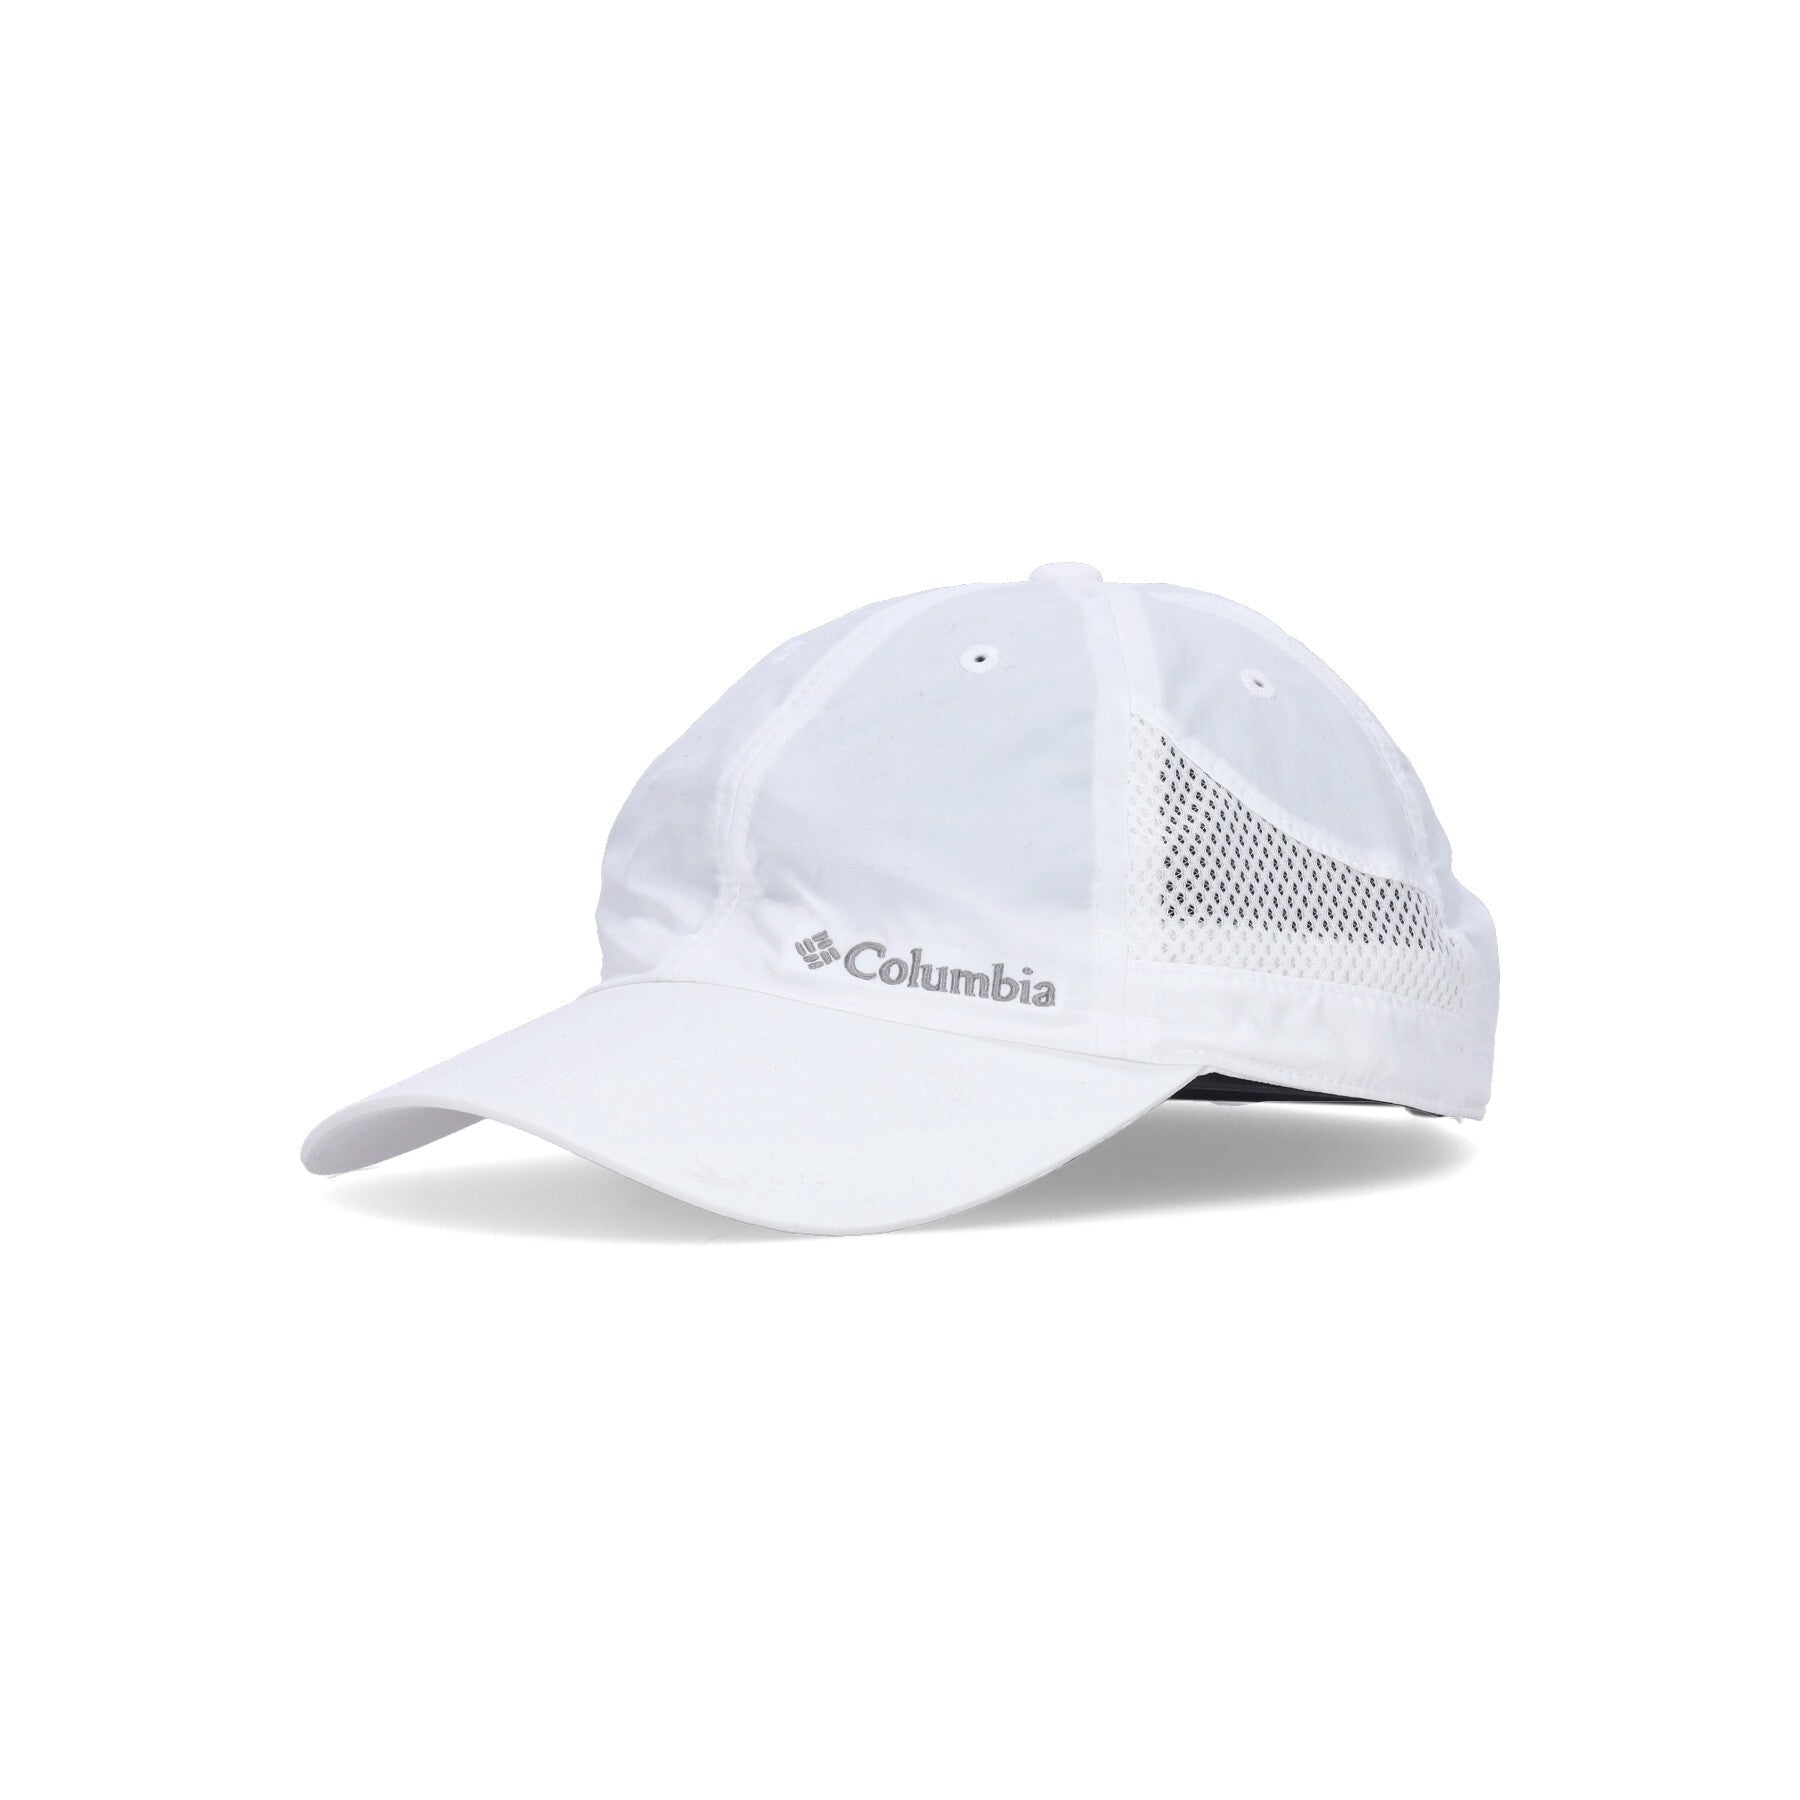 Columbia, Cappellino Visiera Curva Uomo Tech Shade Hat, White